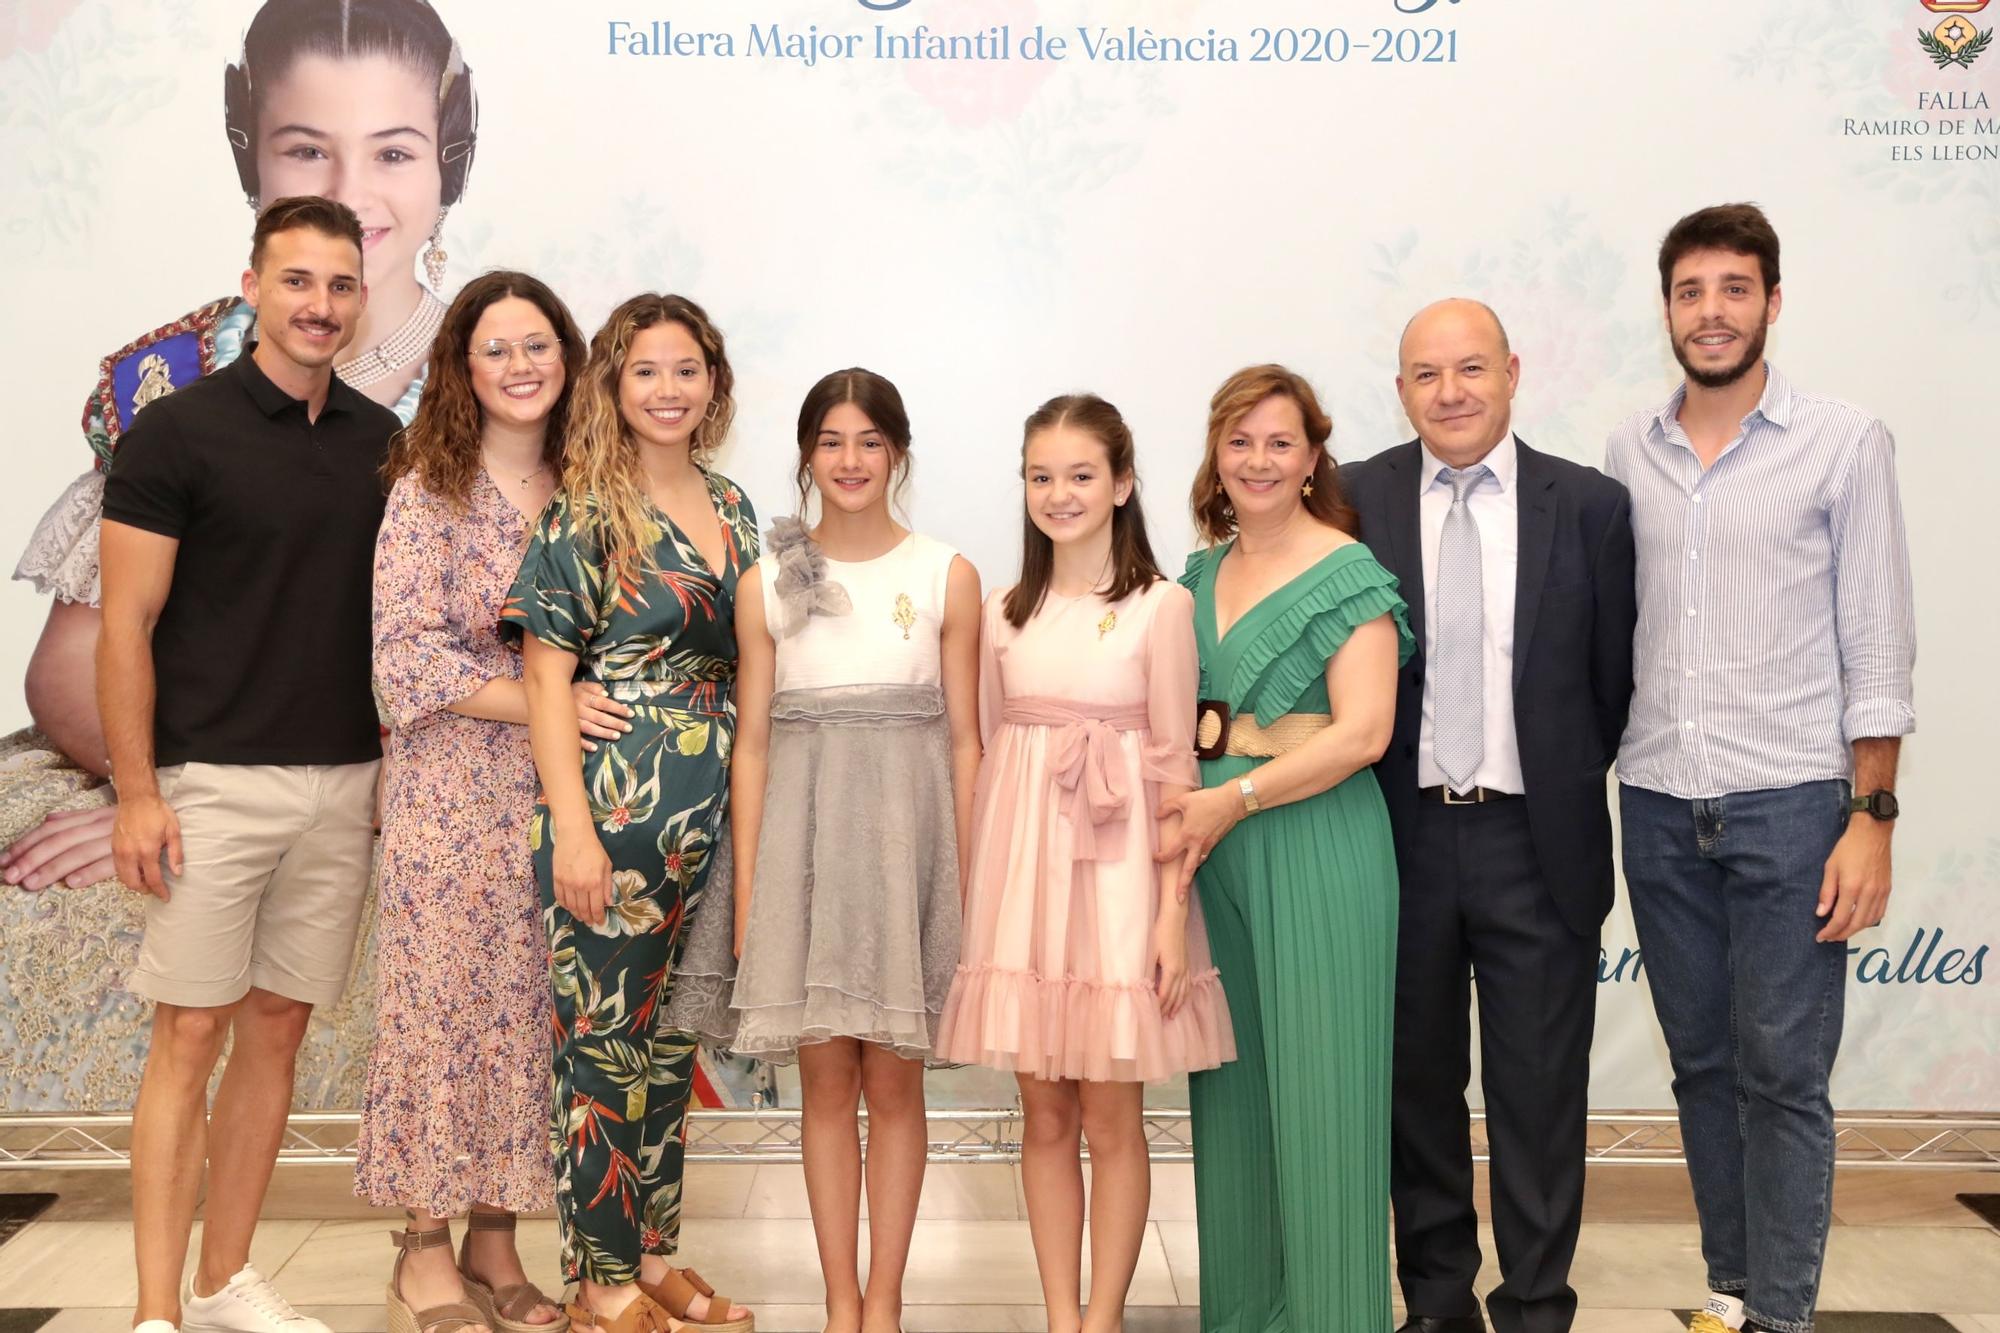 El homenaje a Carla García, fallera mayor infantil de València 2020 y 2021, en imágenes